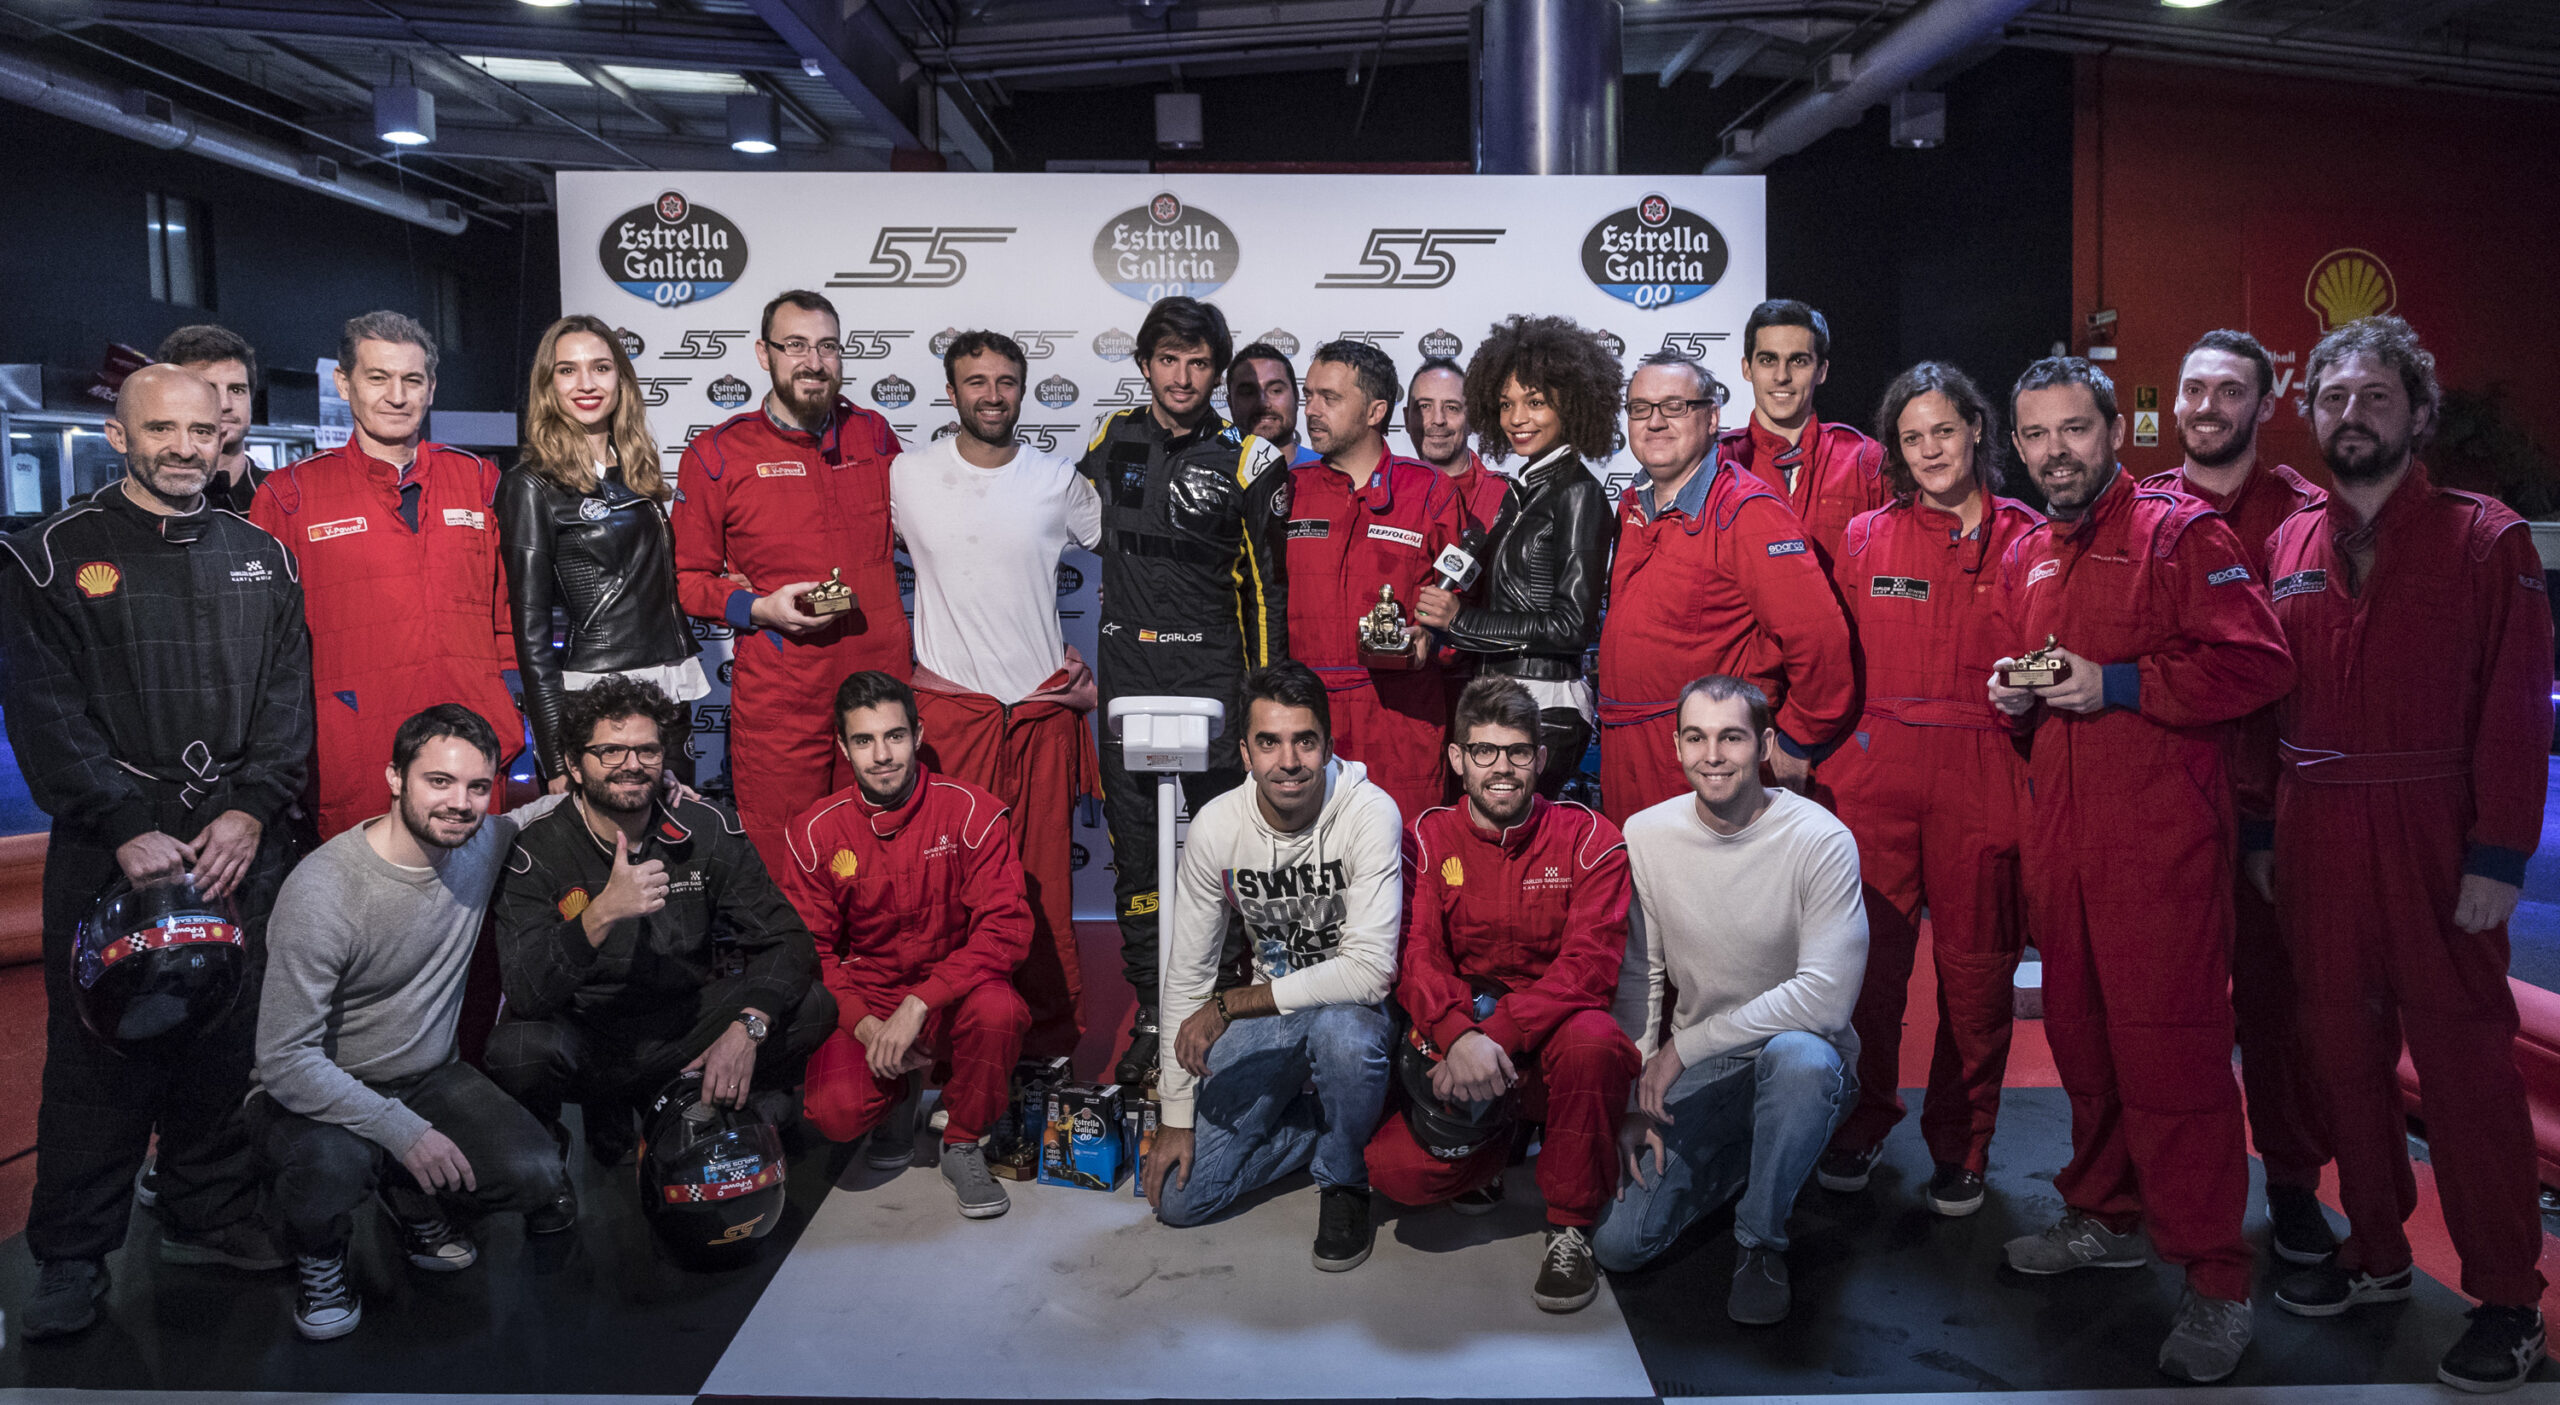 Carlos Sainz Karting evento con Estrella Galicia 0,0